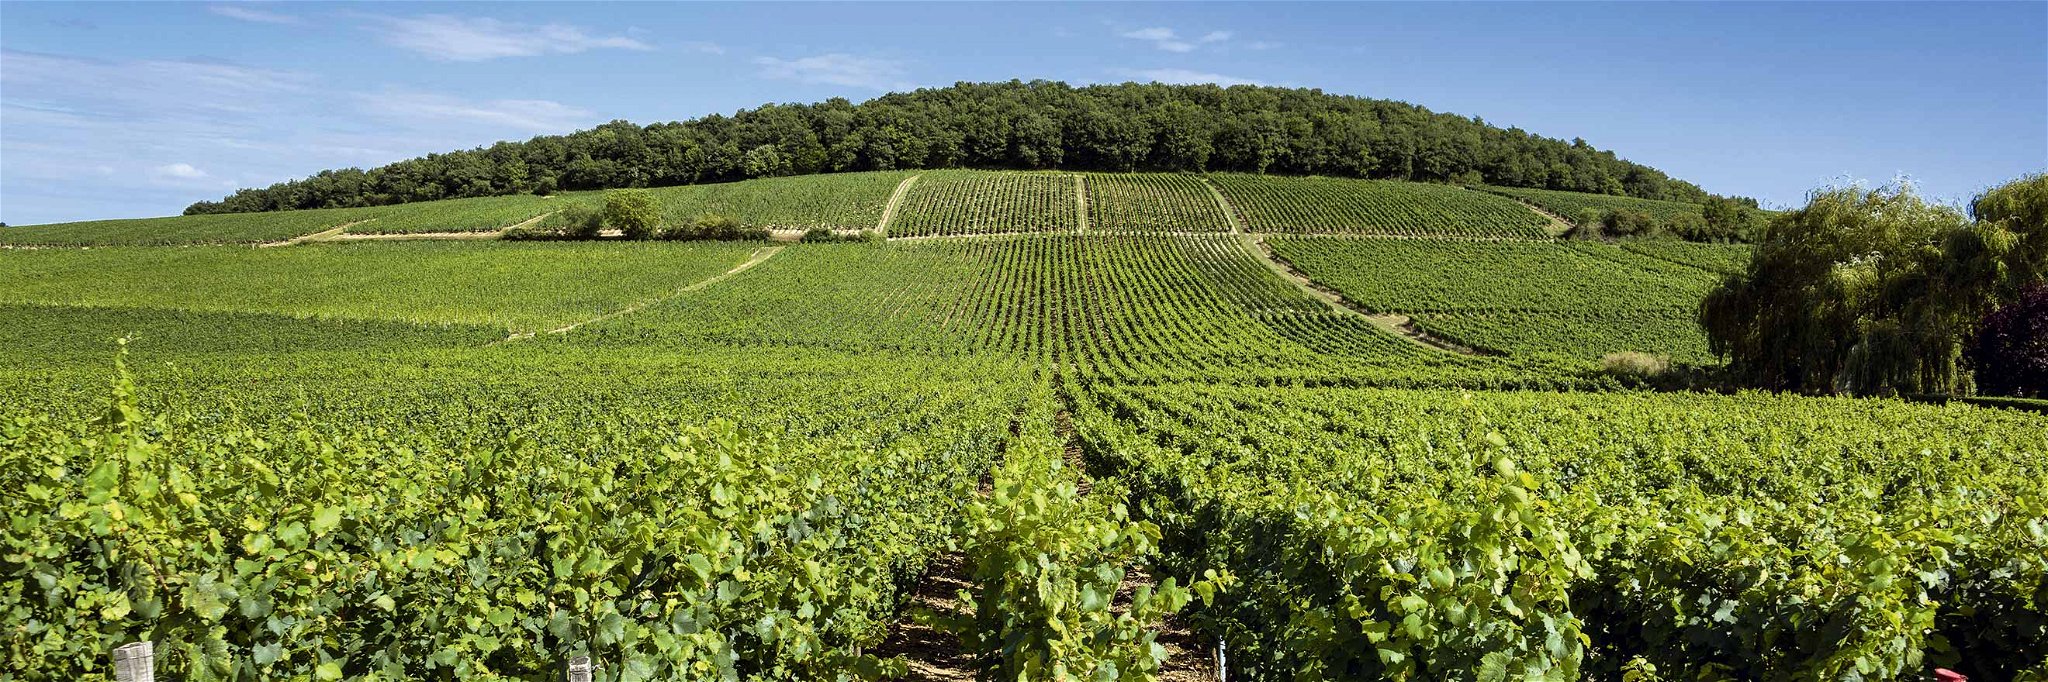 Der Chardonnay wurde erst 1991 in Deutschland zugelassen. Jetzt kommen die damals gepflanzten Reben in ein interessantes Alter.